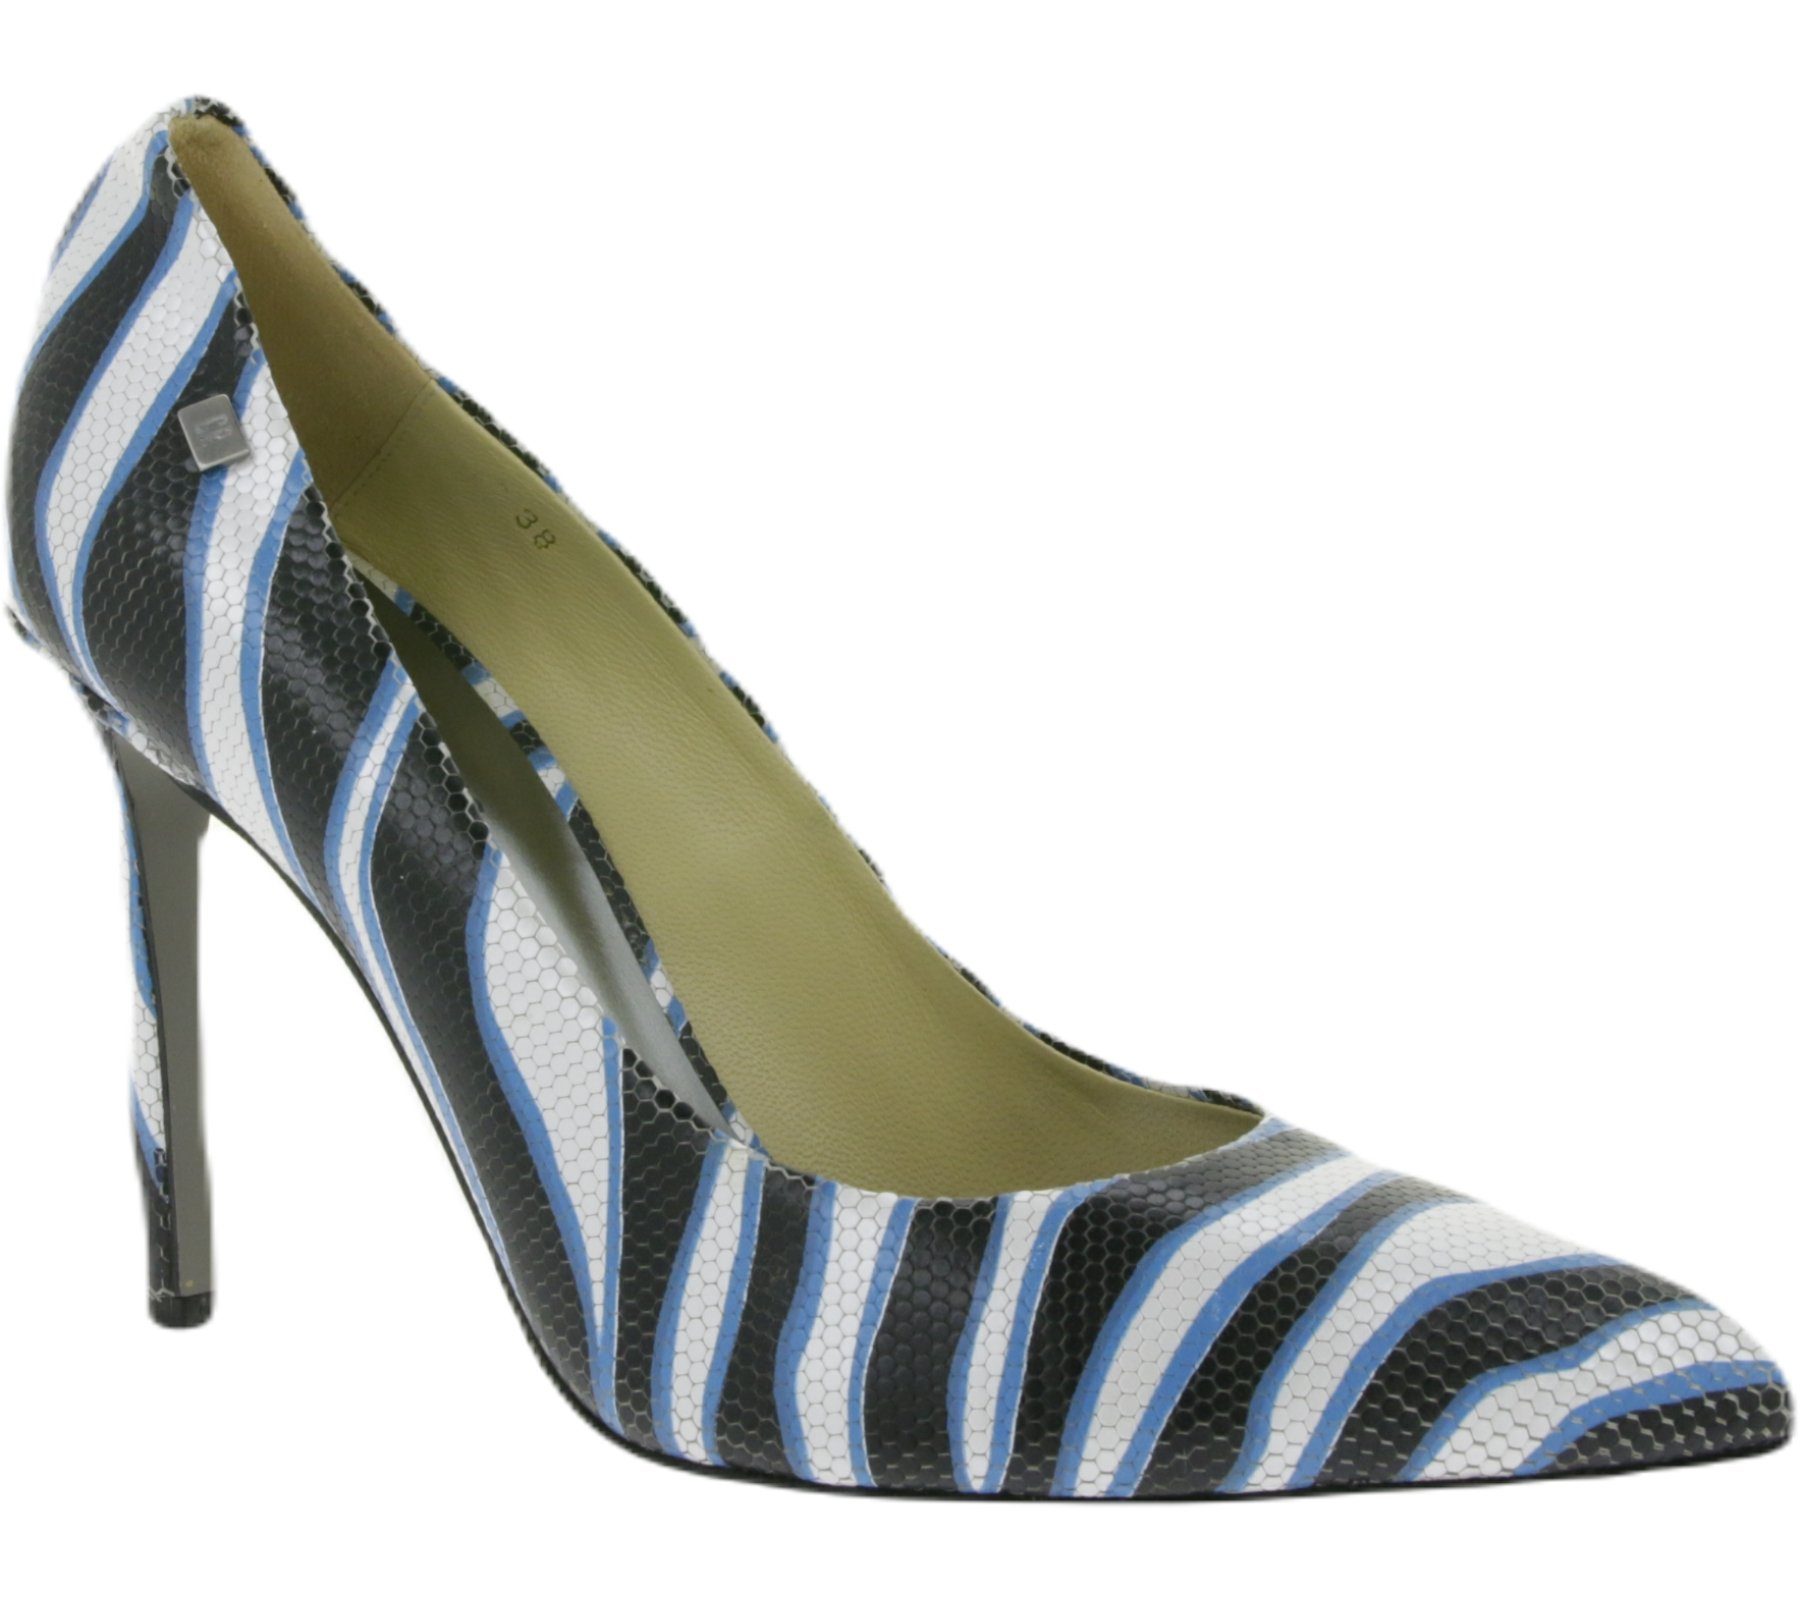 CR7 CR7 CRISTIANO RONALDO Tango Damen Echtleder Stilettos mit Zebra-Muster  Made in Portugal Absatz-Schuhe Schwarz/Weiß/Blau Pumps